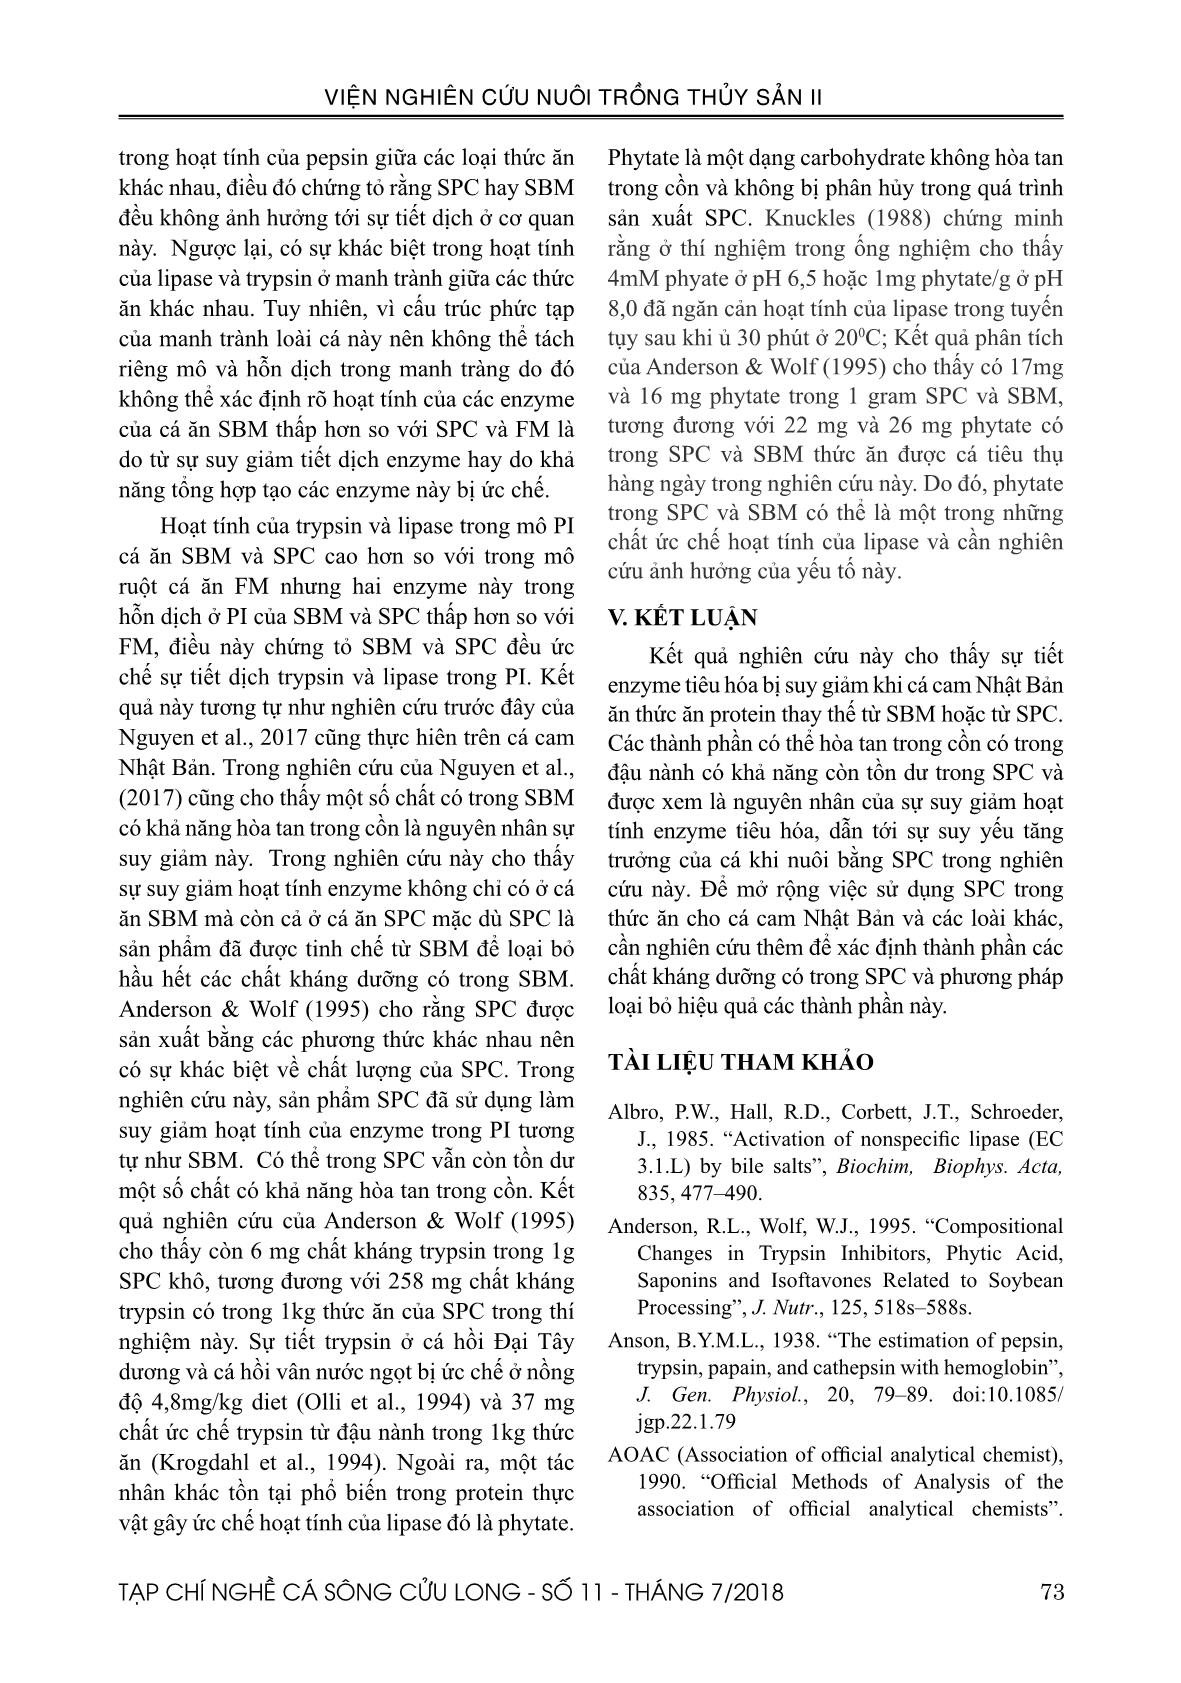 Ảnh hưởng của Soy protein concentrate (SPC) tới enzyme tiêu hóa của cá cam Nhật Bản (Seriola quinqueradiata Temminck & Schlegel, 1845) trang 7